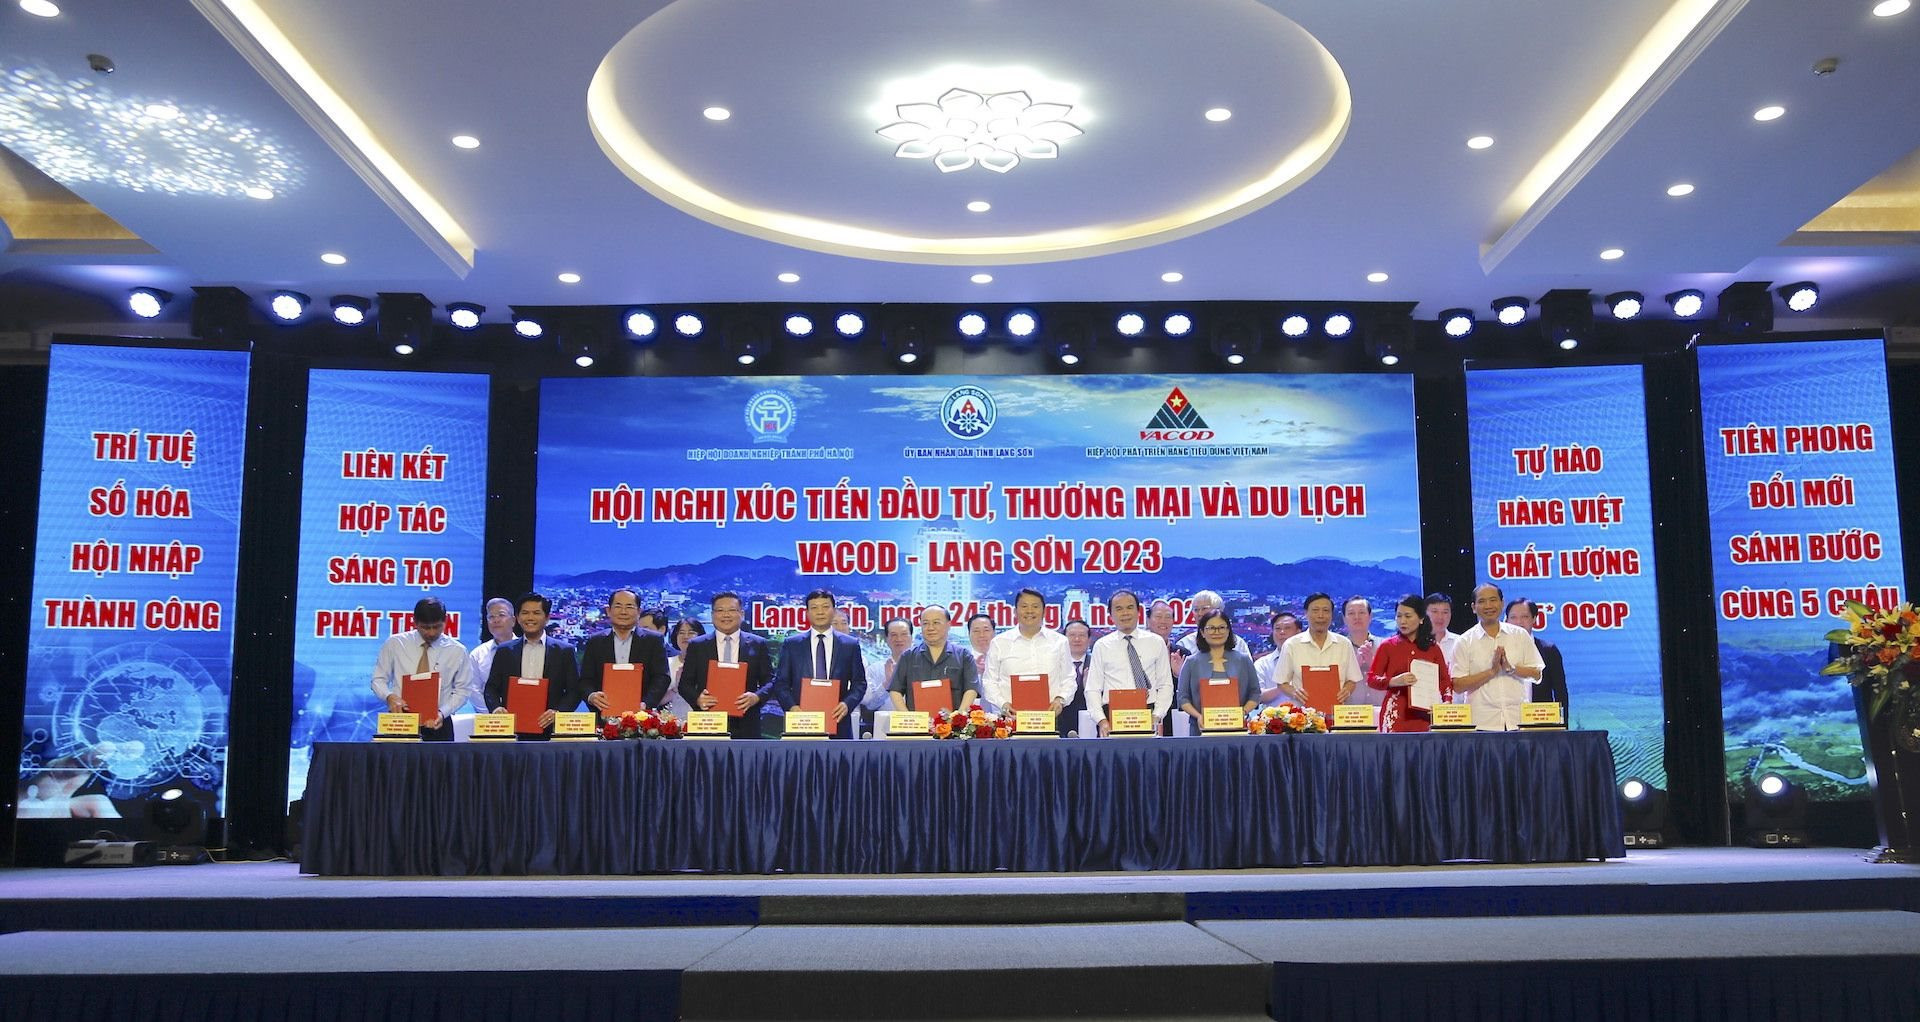 Hội nghị Xúc tiến Đầu tư, Thương mại và Du lịch VACOD - Lạng Sơn 2023:  Nhiều cơ hội hợp tác, kinh doanh, mở rộng thị trường hàng hoá